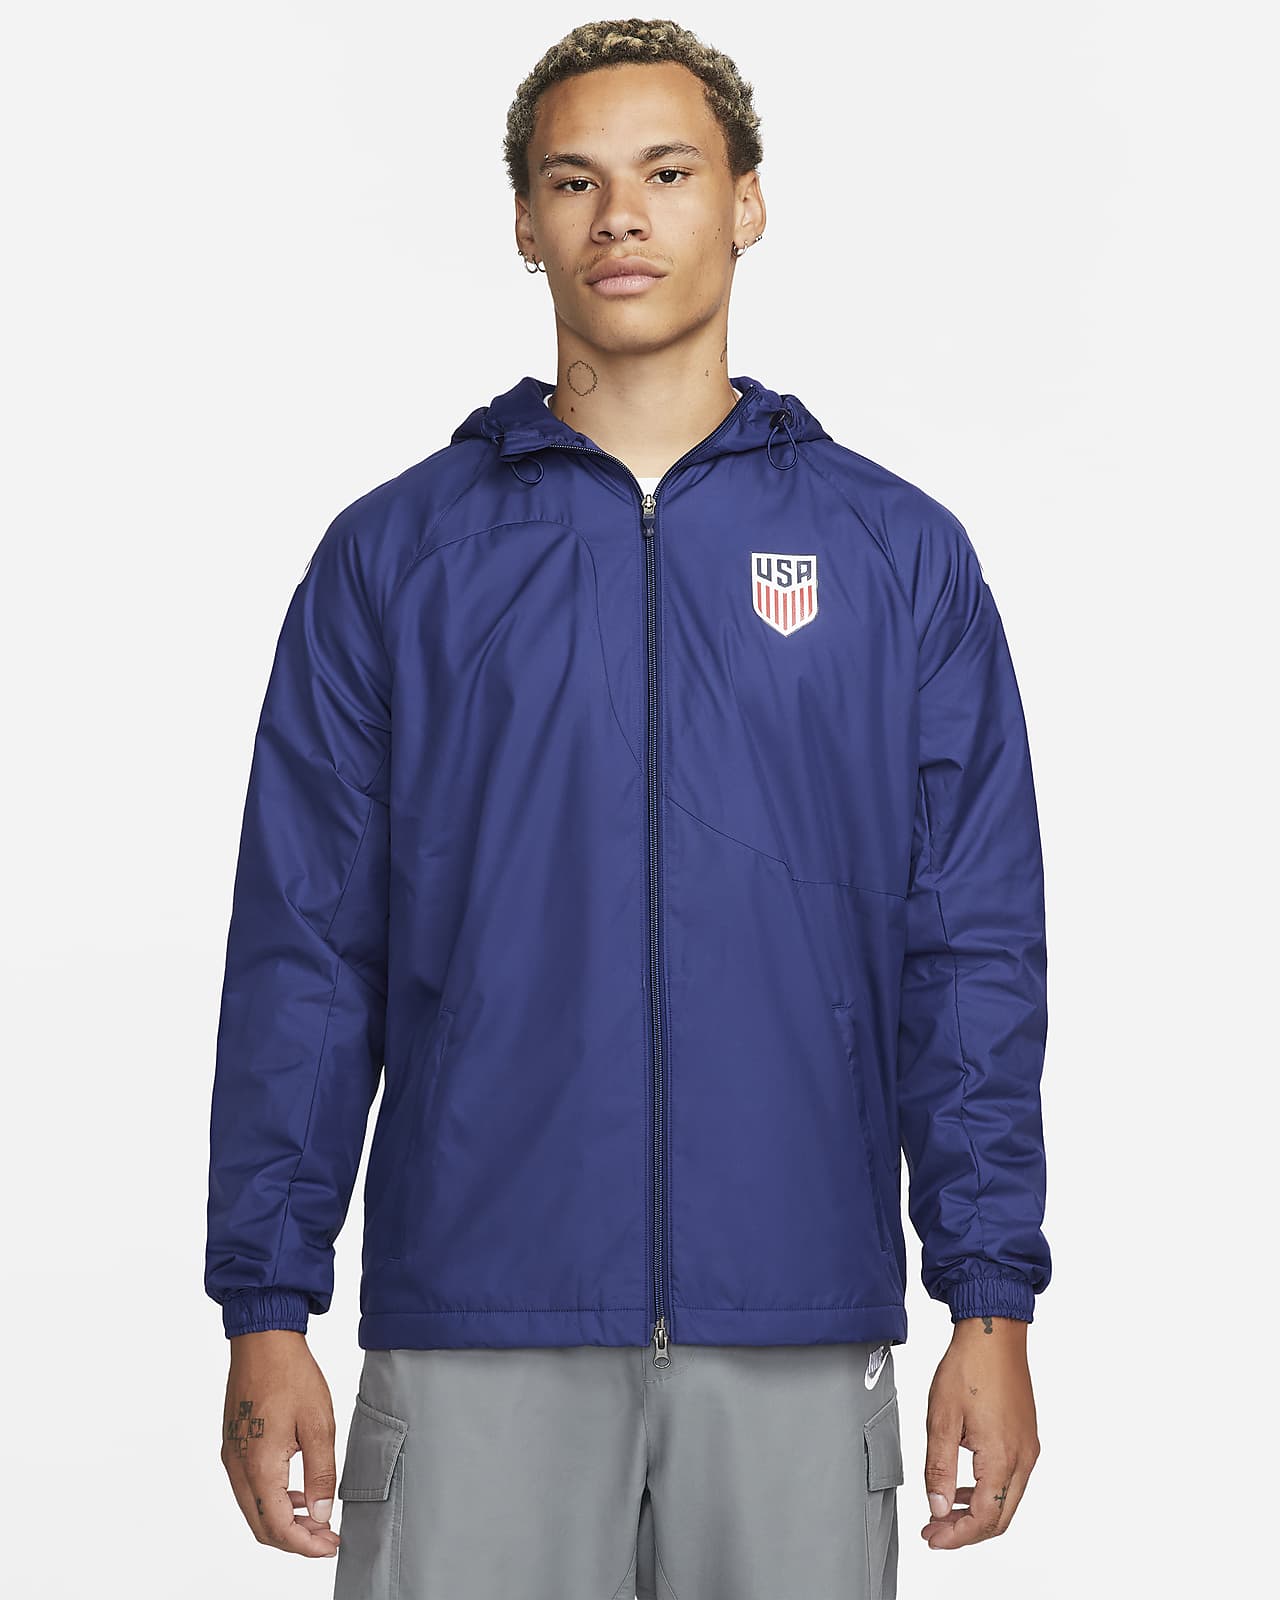 U.S. Strike Woven Soccer Jacket. Nike.com